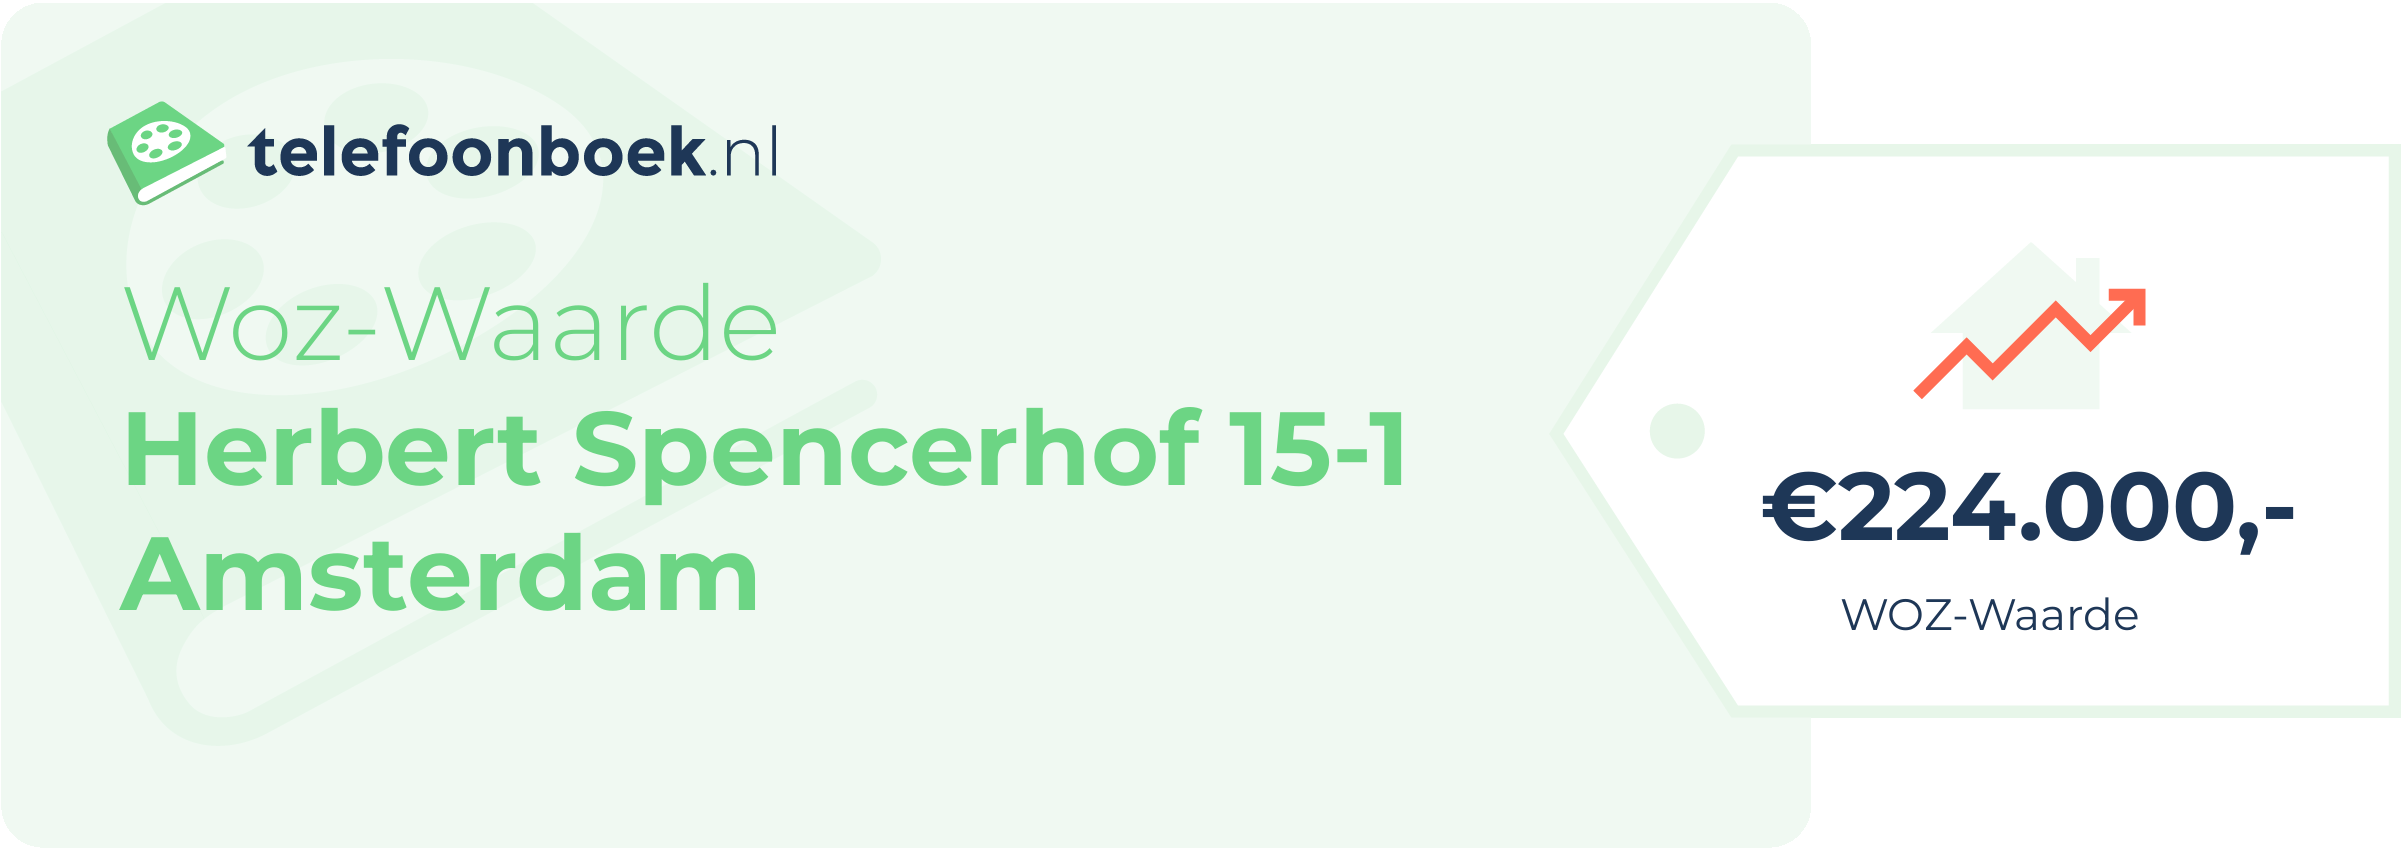 WOZ-waarde Herbert Spencerhof 15-1 Amsterdam